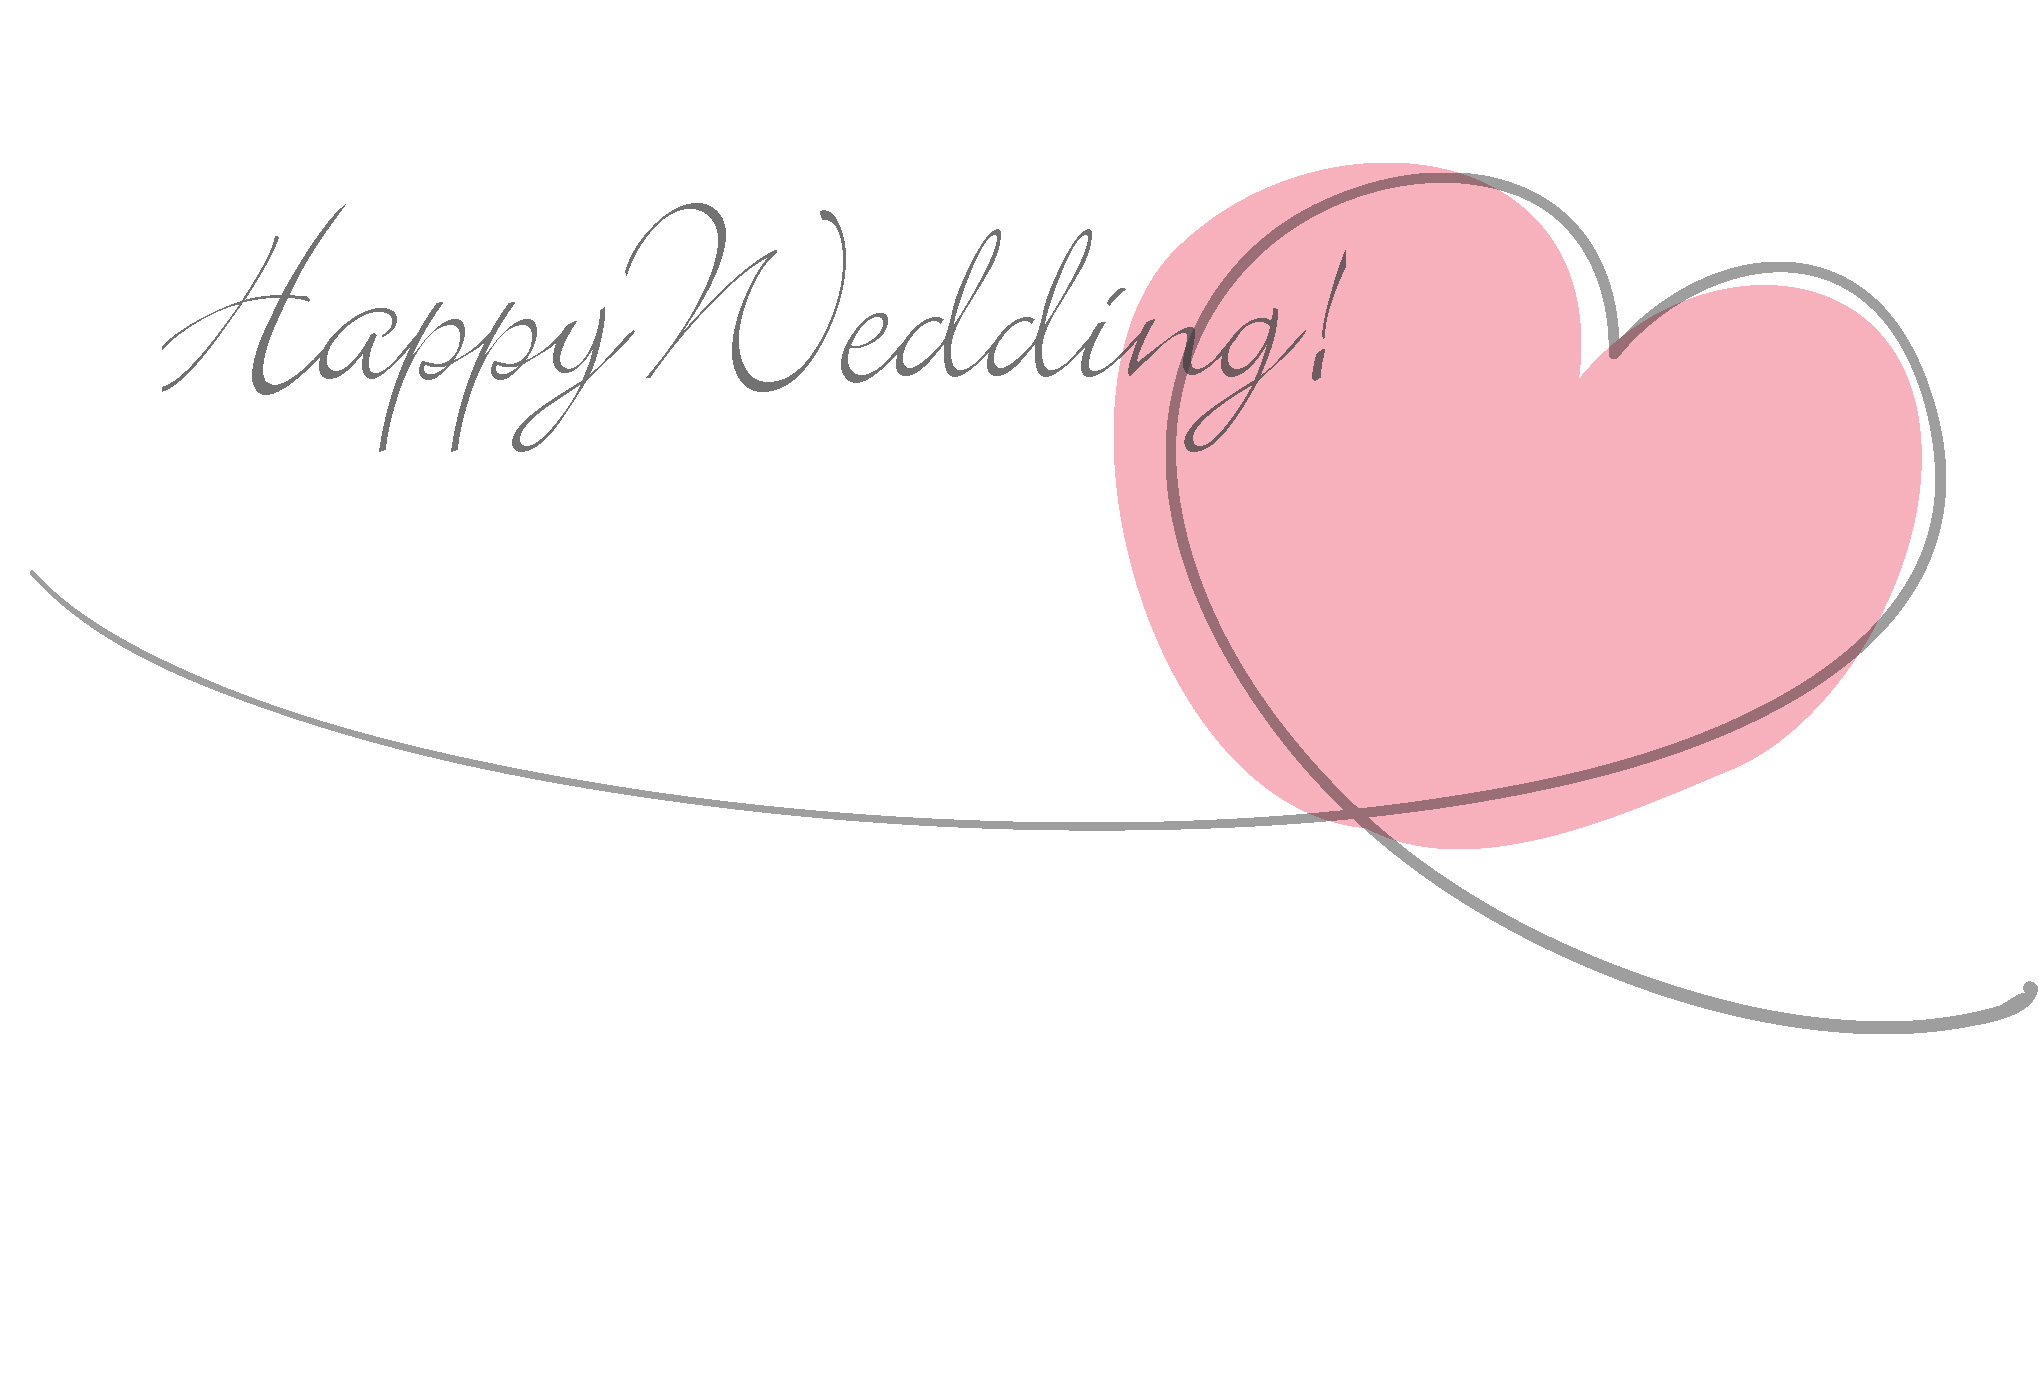 結婚祝い おめでとう はがき メッセージポストカード テンプレート ウェディング 無料素材 Naver まとめ